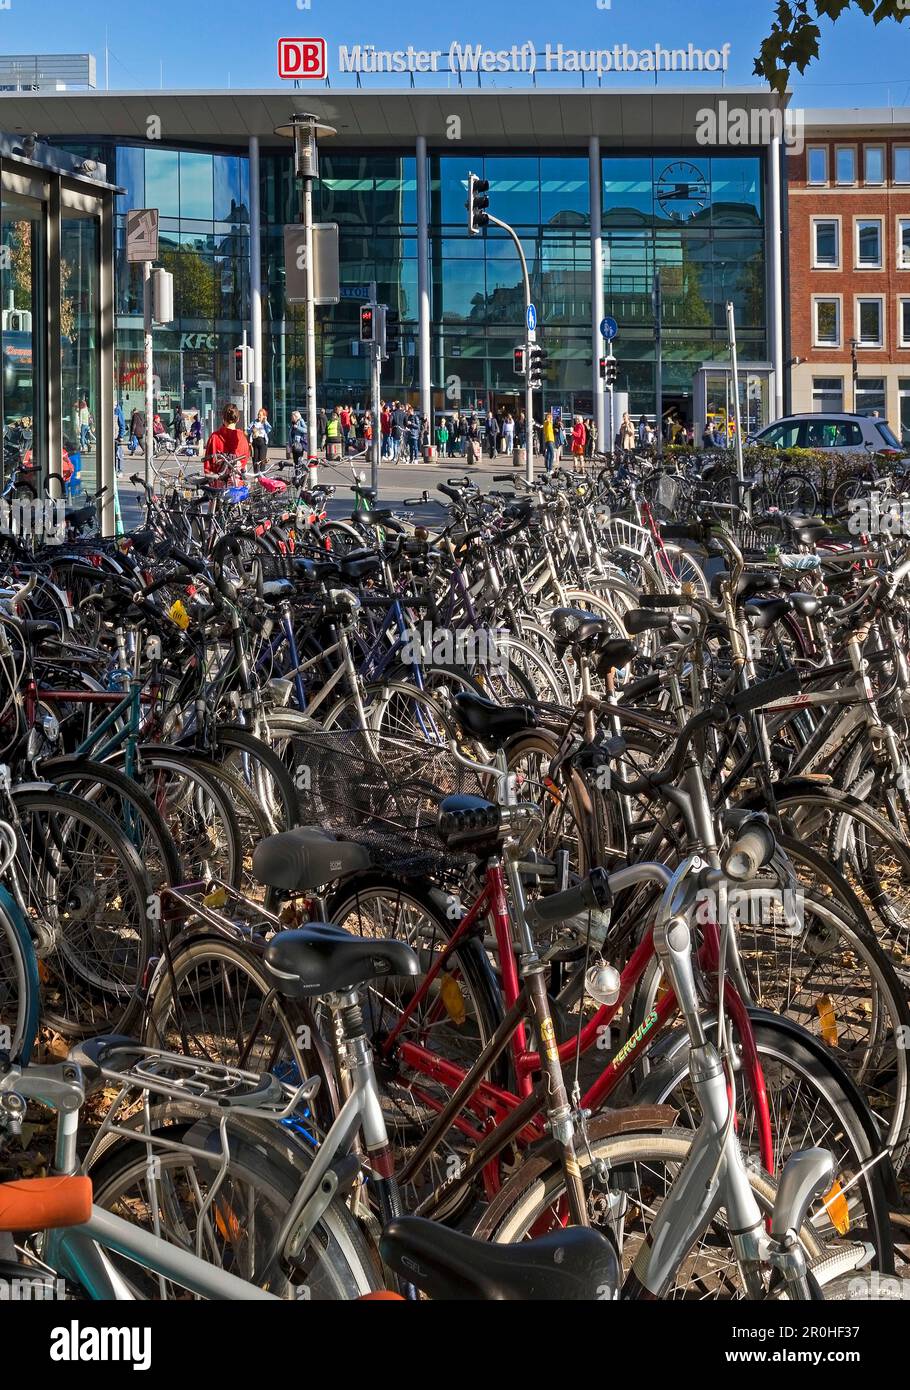 Beaucoup de vélos à la gare principale, Allemagne, Rhénanie-du-Nord-Westphalie, Munster Banque D'Images